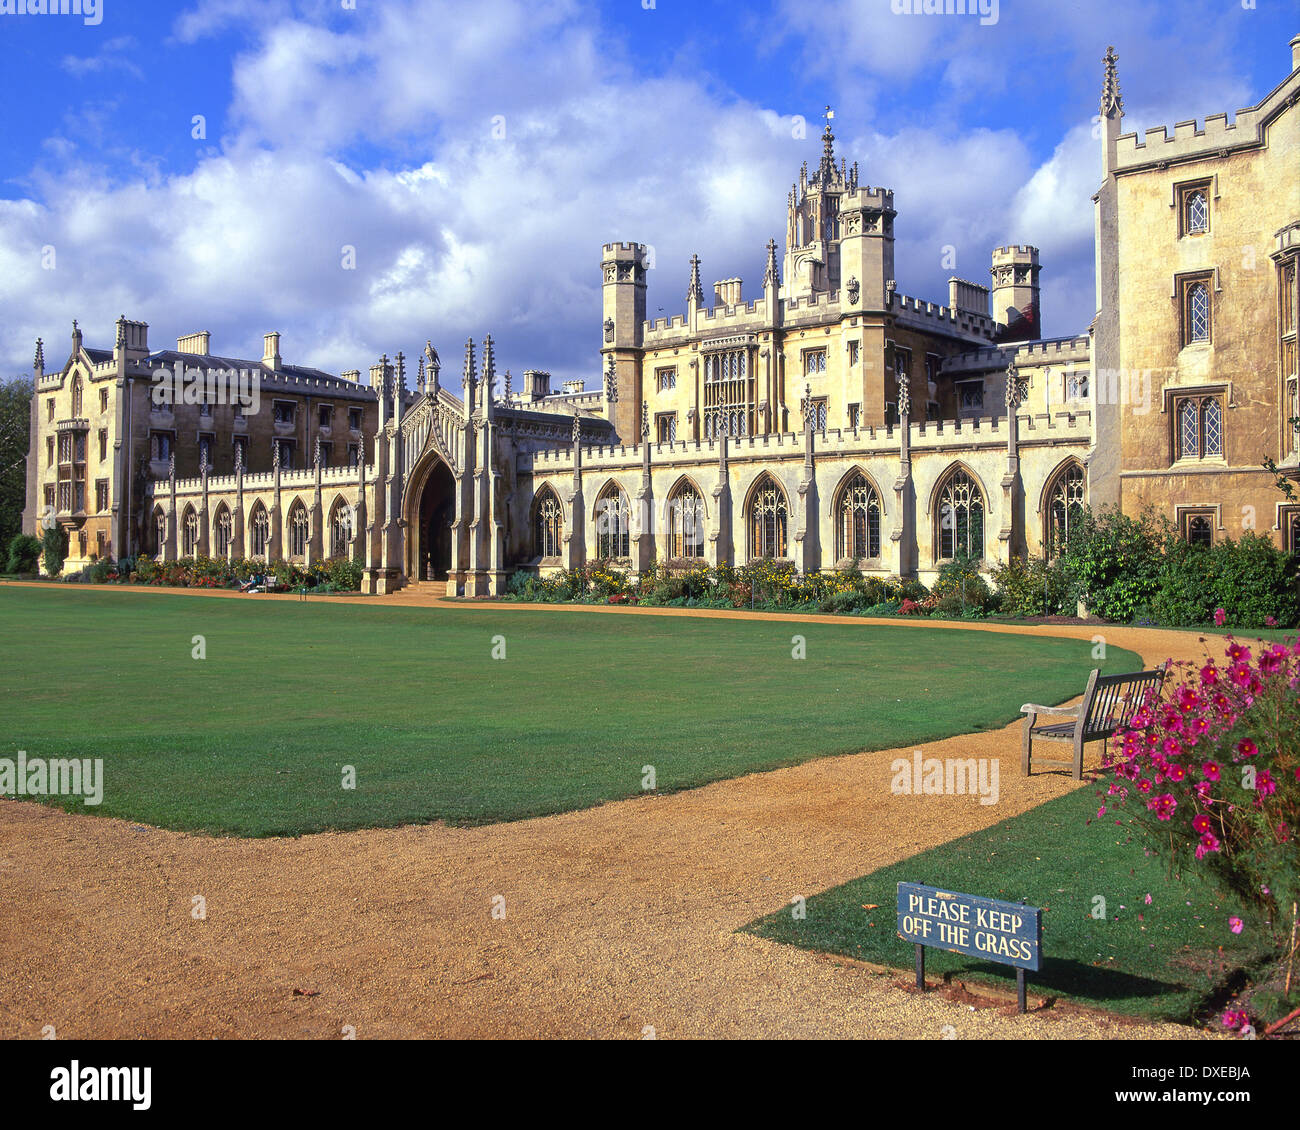 St Johns College in Cambridge im Jahre 1511 von Lady Maragret Beaufort Mutter von König Henry VII - Stadt Cambridge.England gegründet. Stockfoto